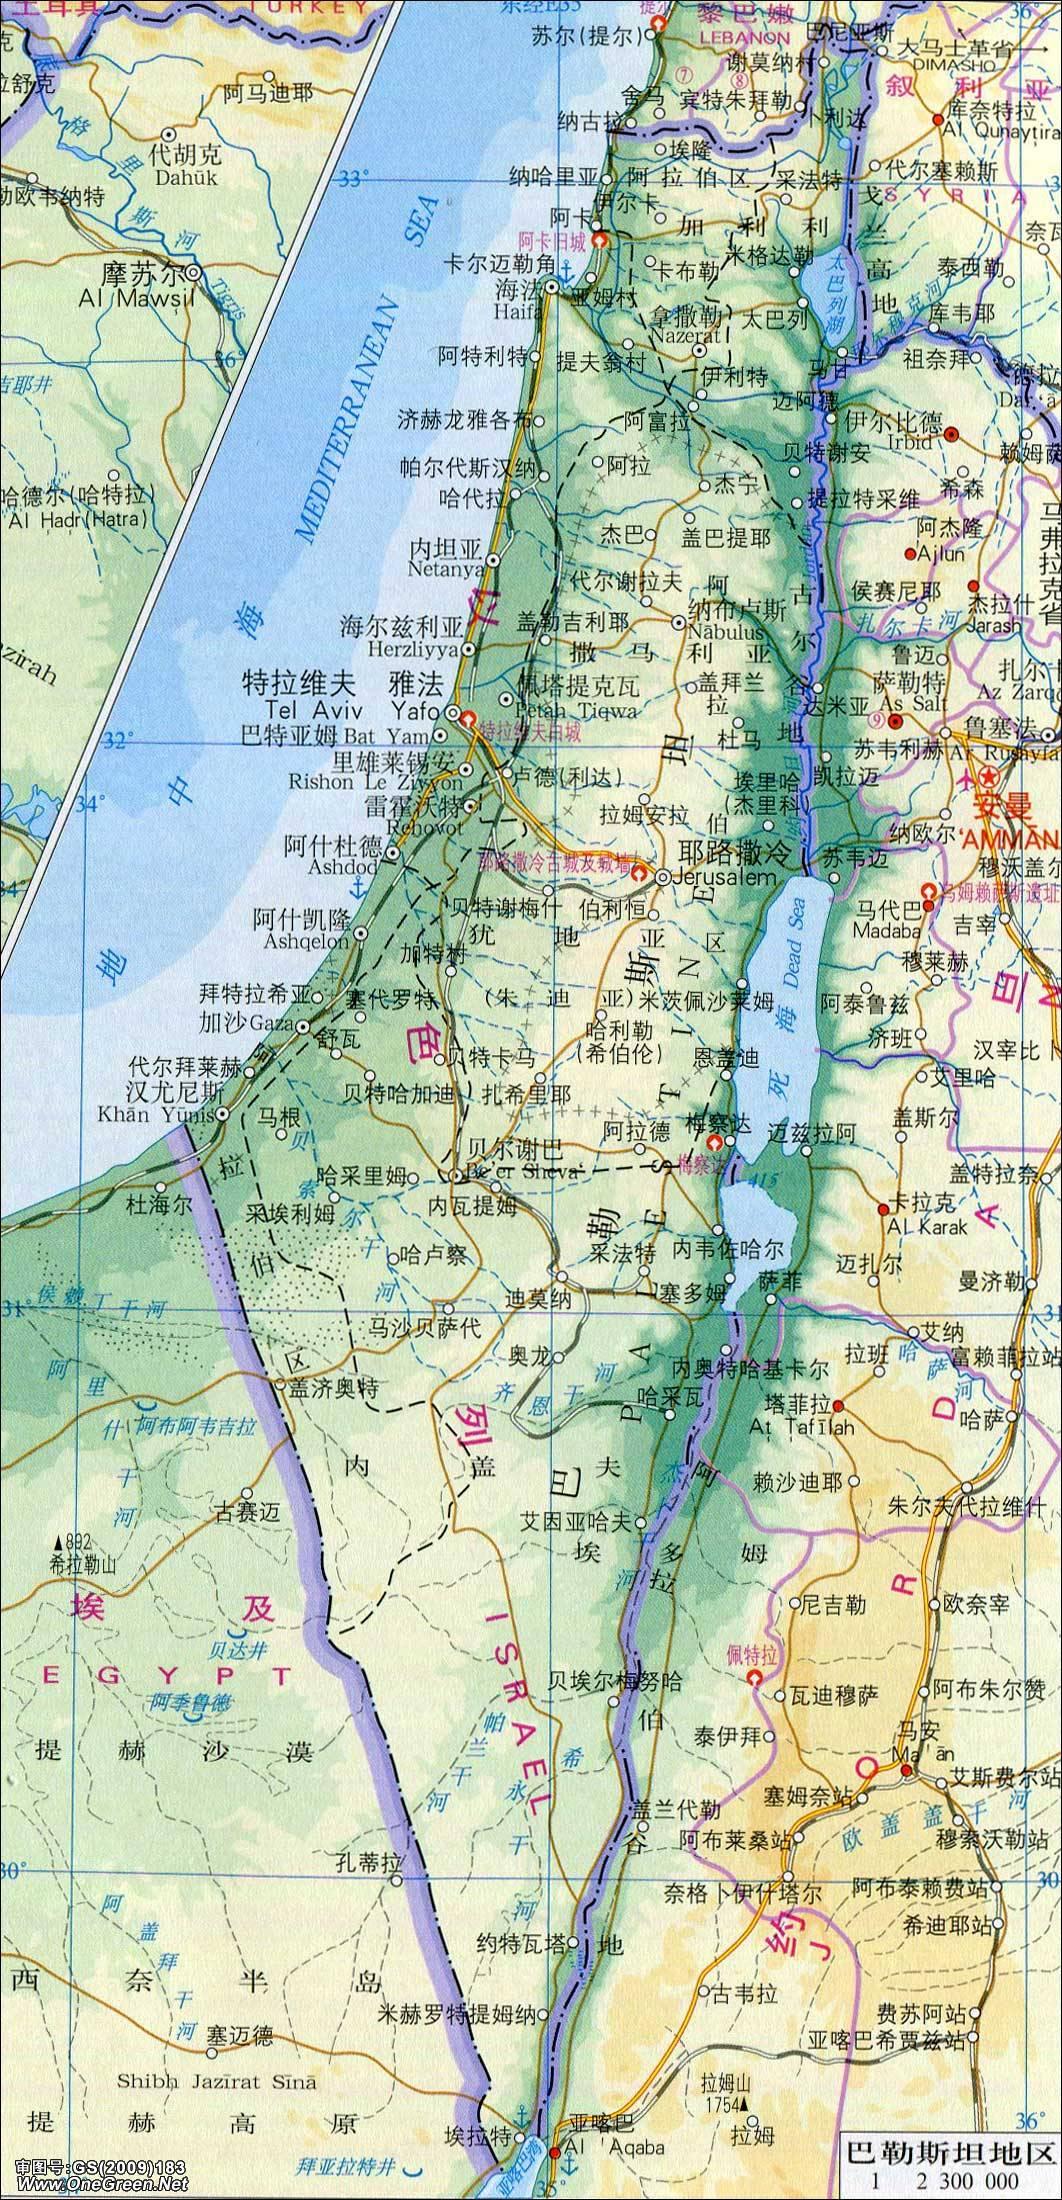 以色列地图,巴勒斯坦地图,黎巴嫩地图中文版全图 - 世界地图全图 - 地理教师网